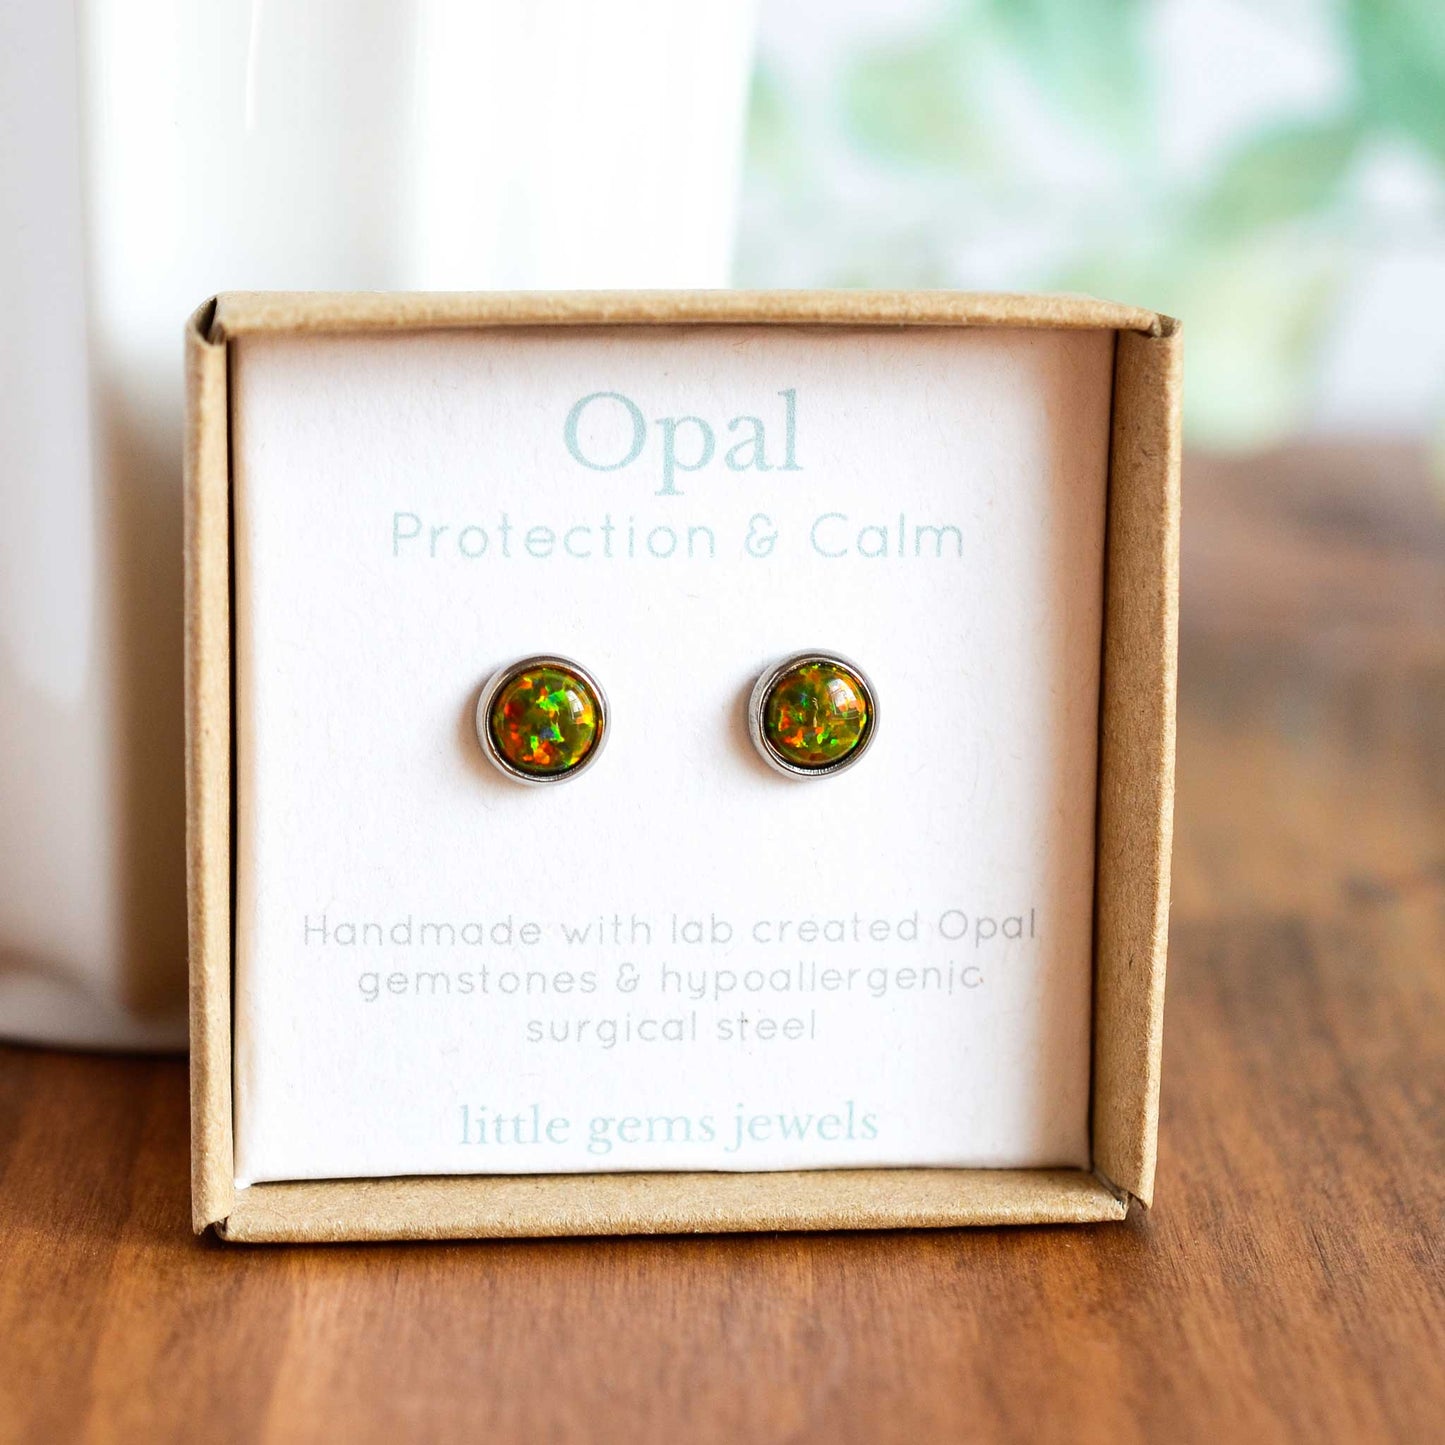 Dark green Opal stud earrings in eco friendly gift box